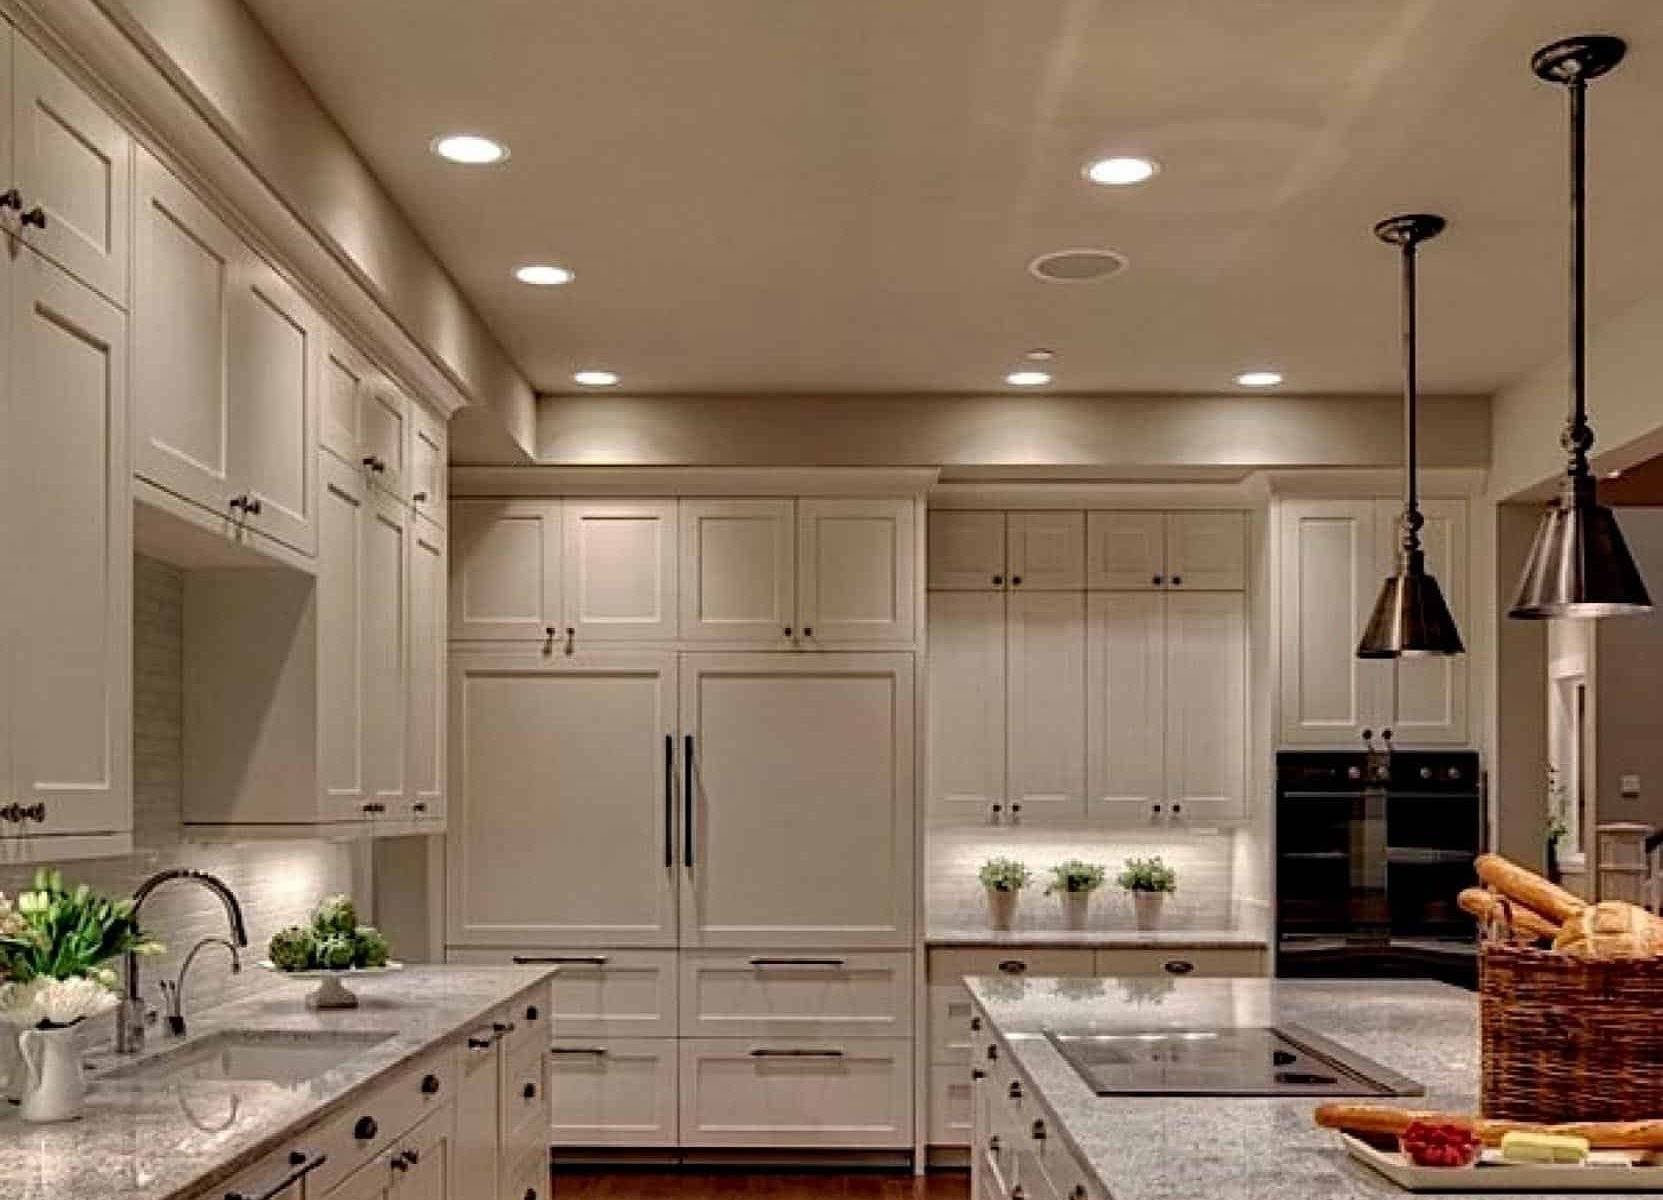 Как расположить точечные светильники на кухне: на натяжном потолке, над рабочей поверхностью, 9 кв м, 16 кв м